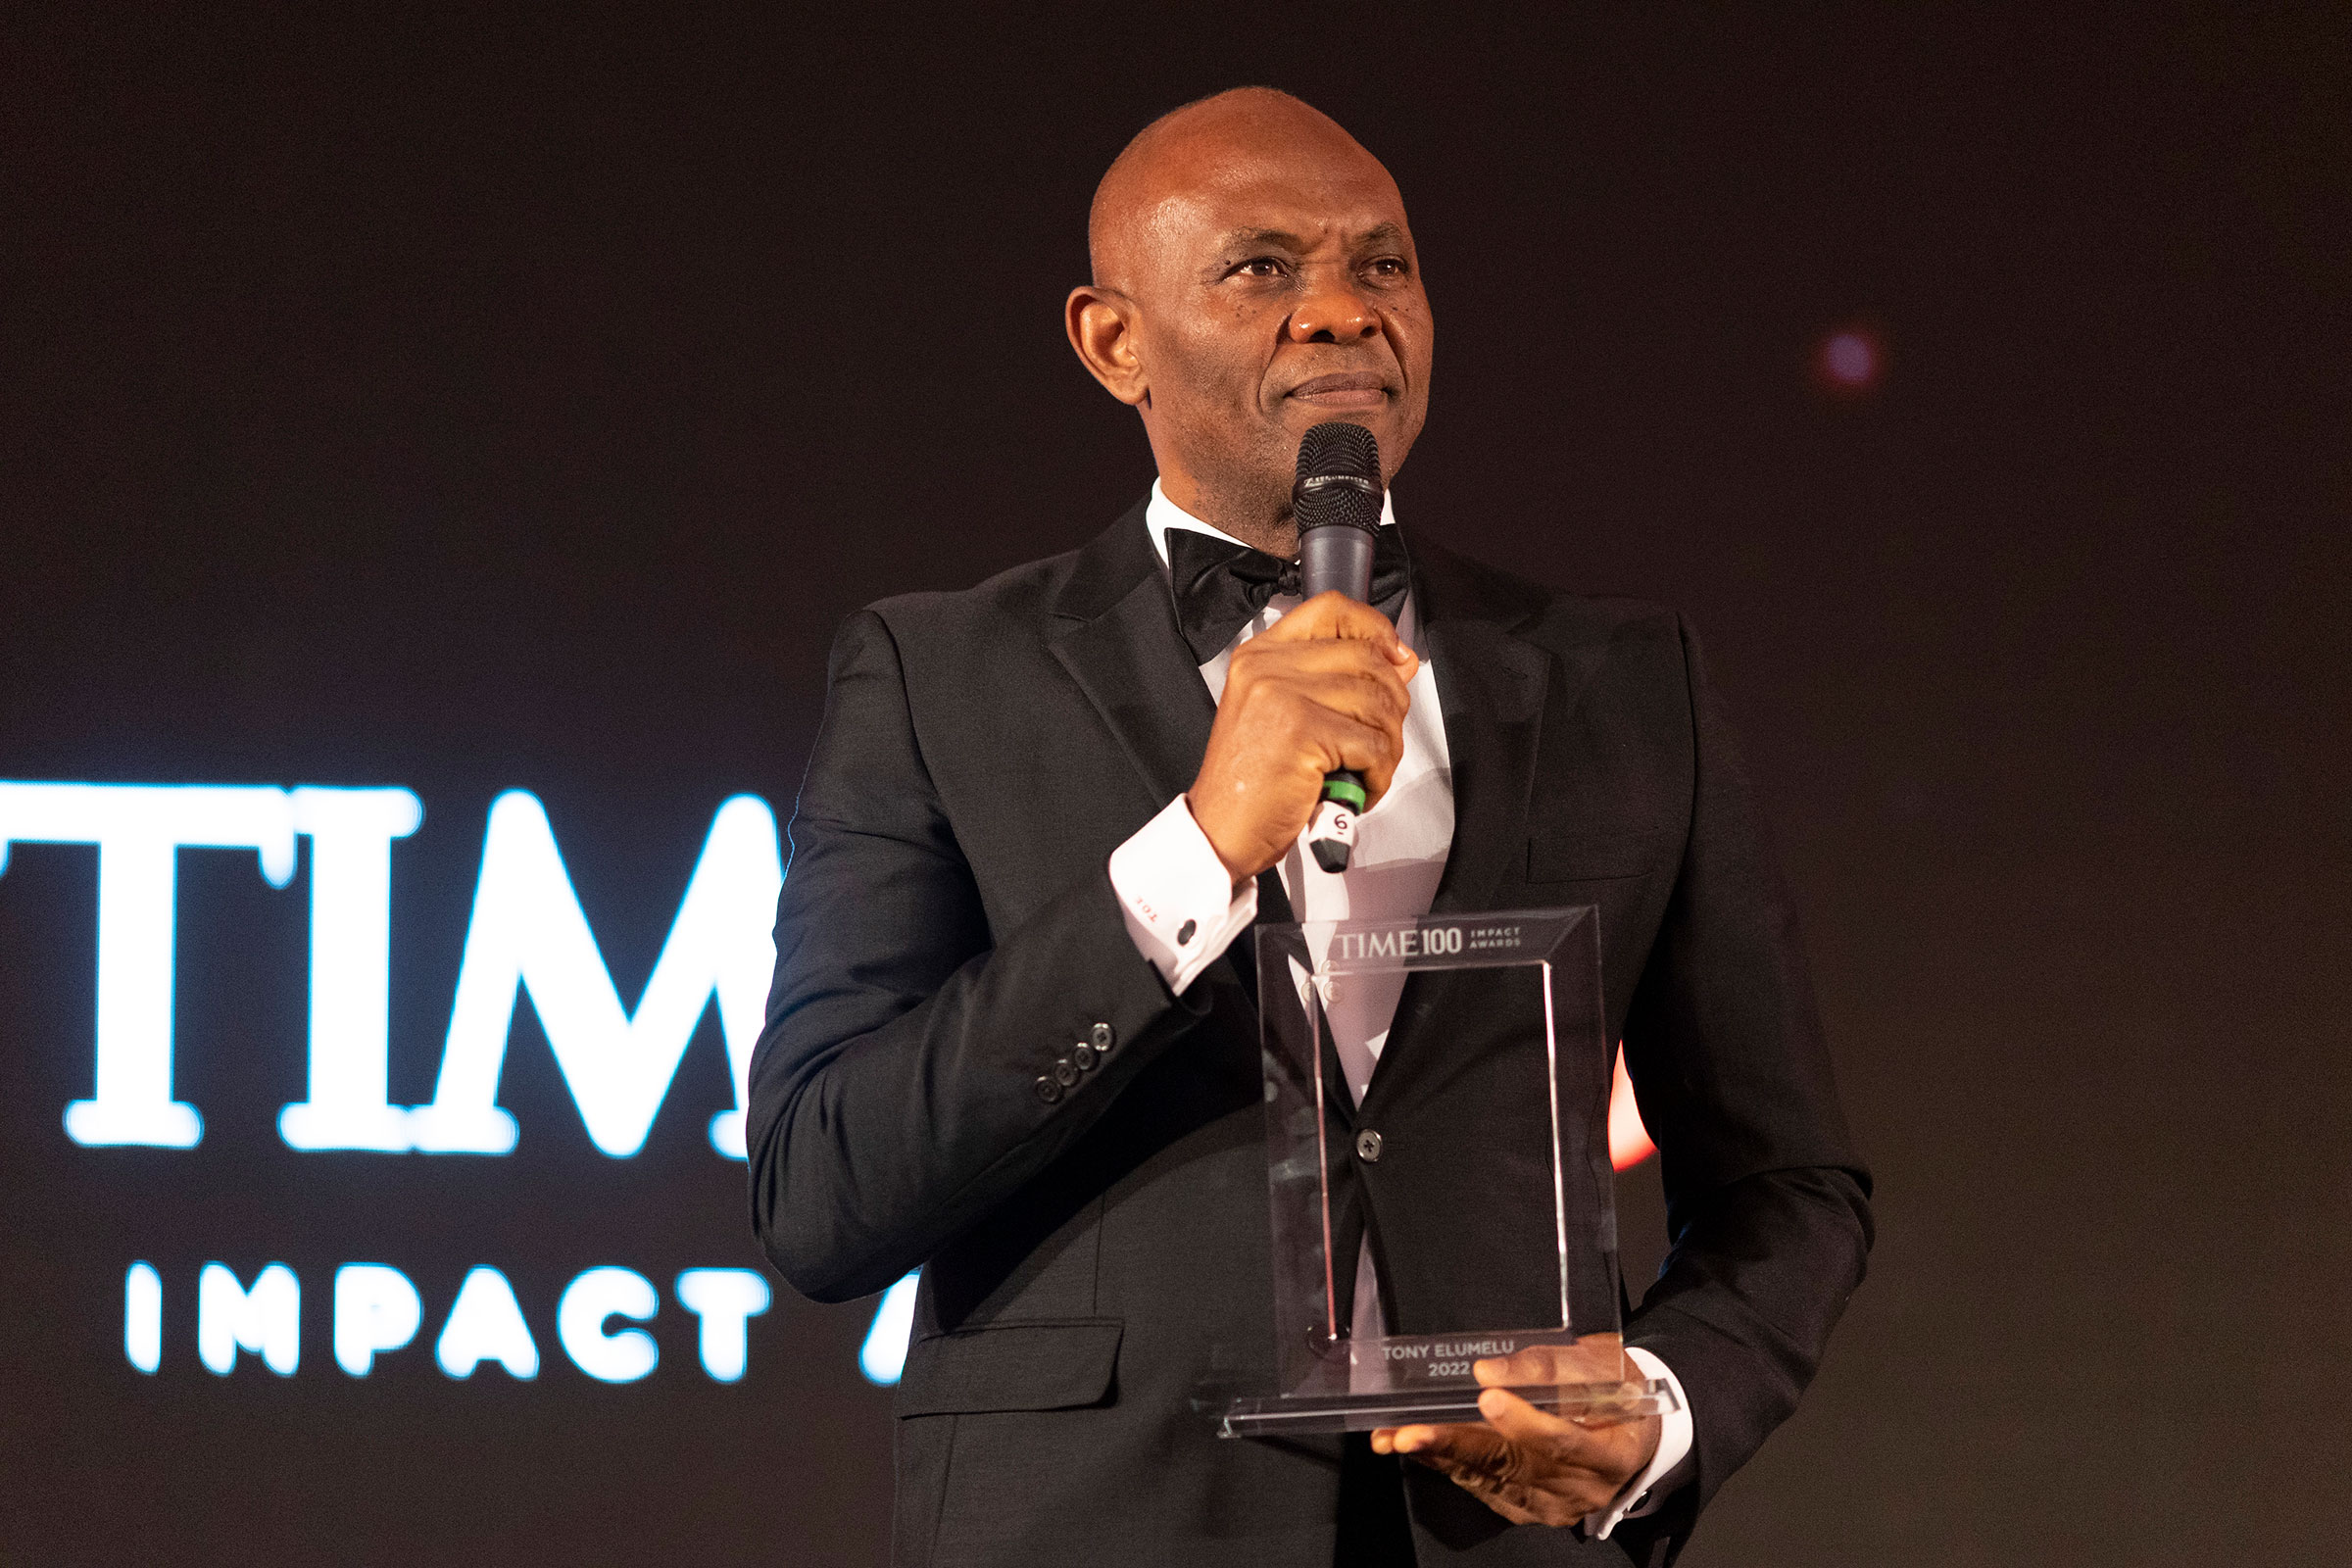 Tony Elumelu Receives TIME 100 Impact Award